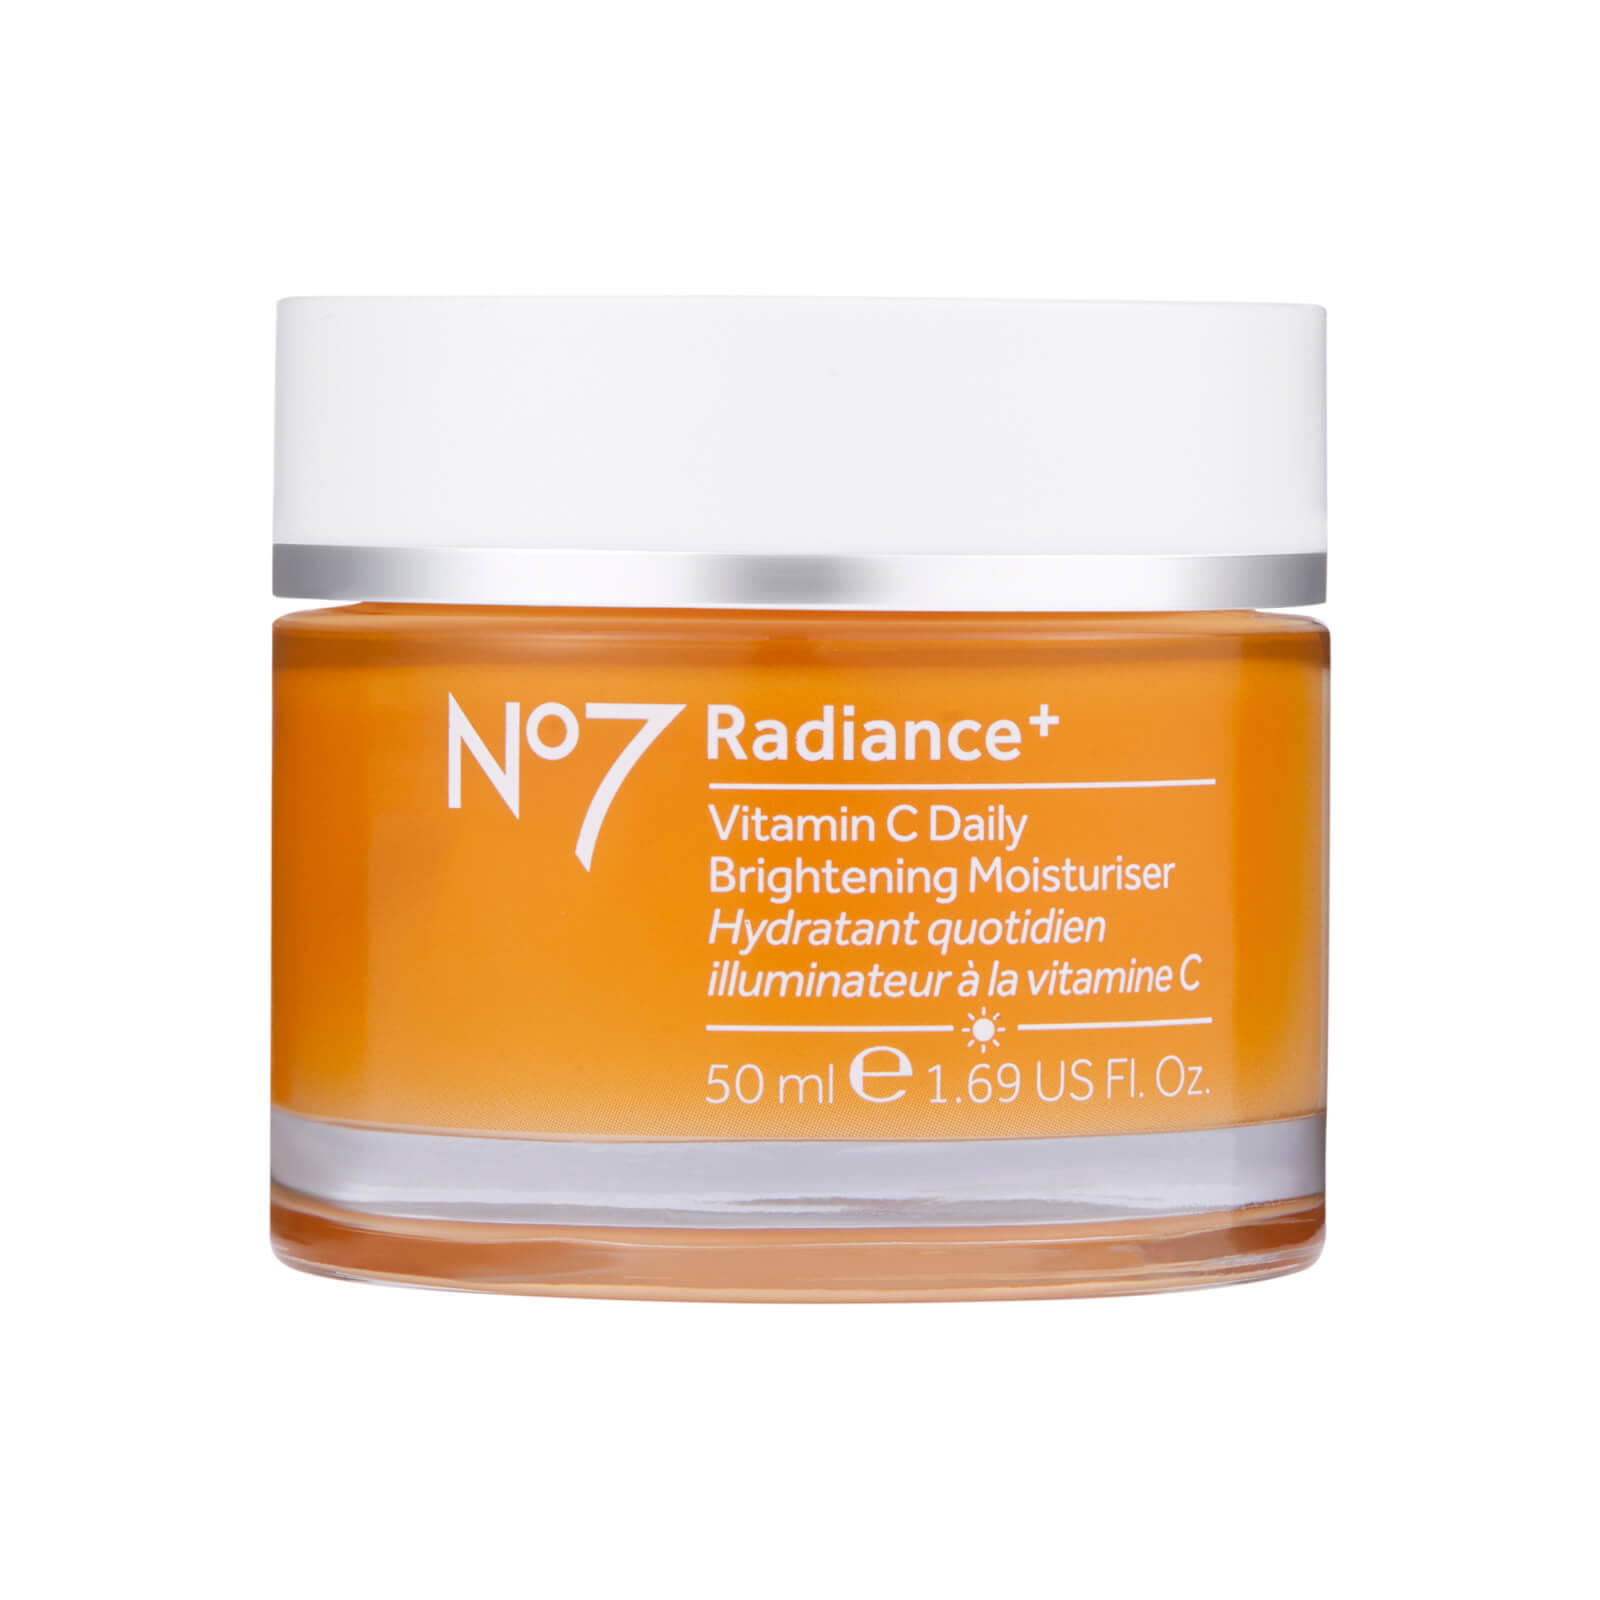 radiance+ vitamin c daily brightening moisturizer